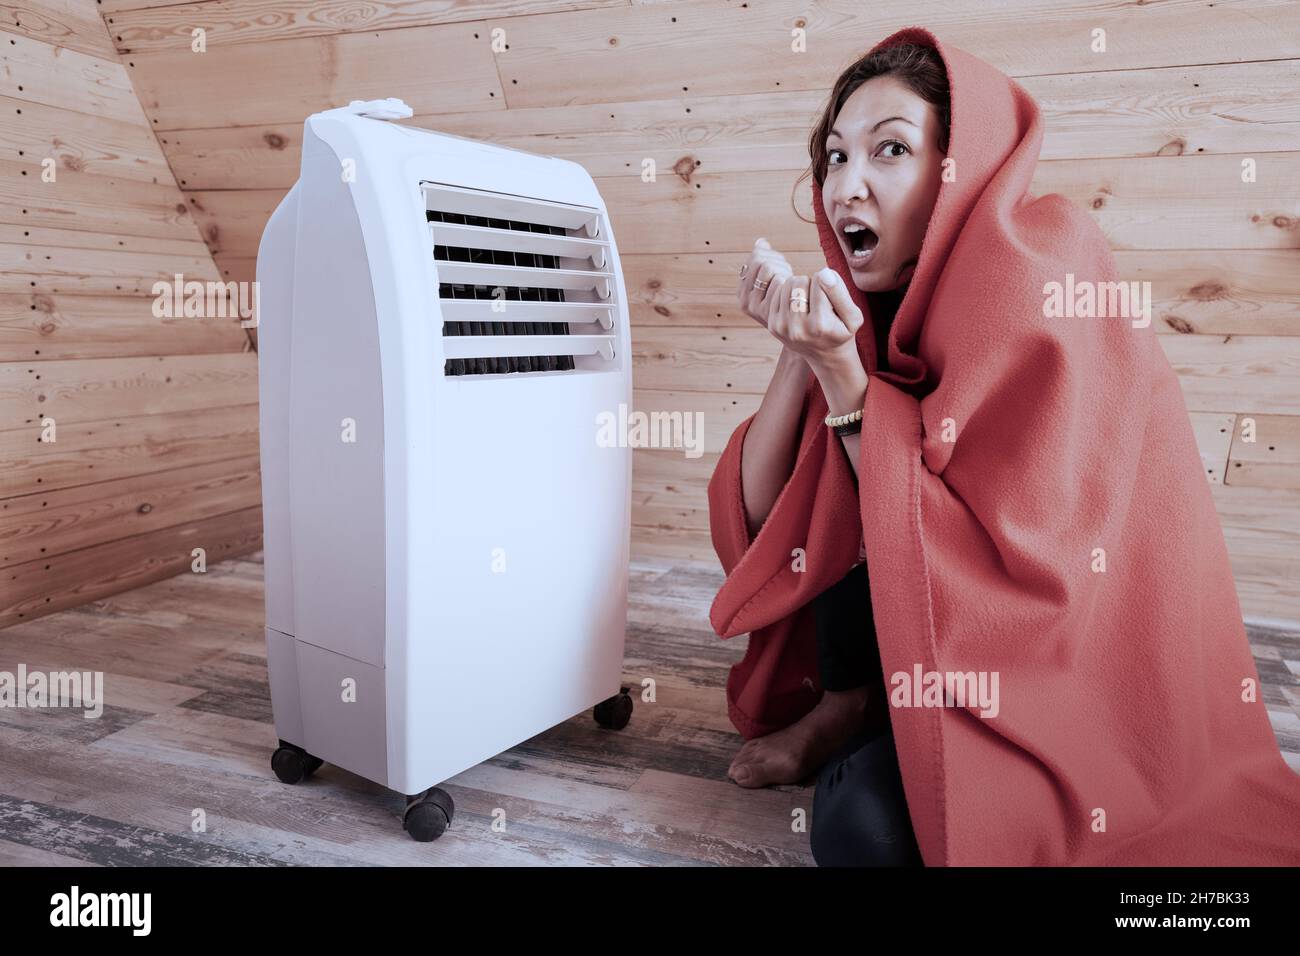 Lustige Frau, die im Winter in ihrem Holzhaus in der Nähe eines elektrischen Heizkörperes friert, eingewickelt in eine Decke. Das Konzept von Energie und Komfort in der kalten Jahreszeit. Stockfoto